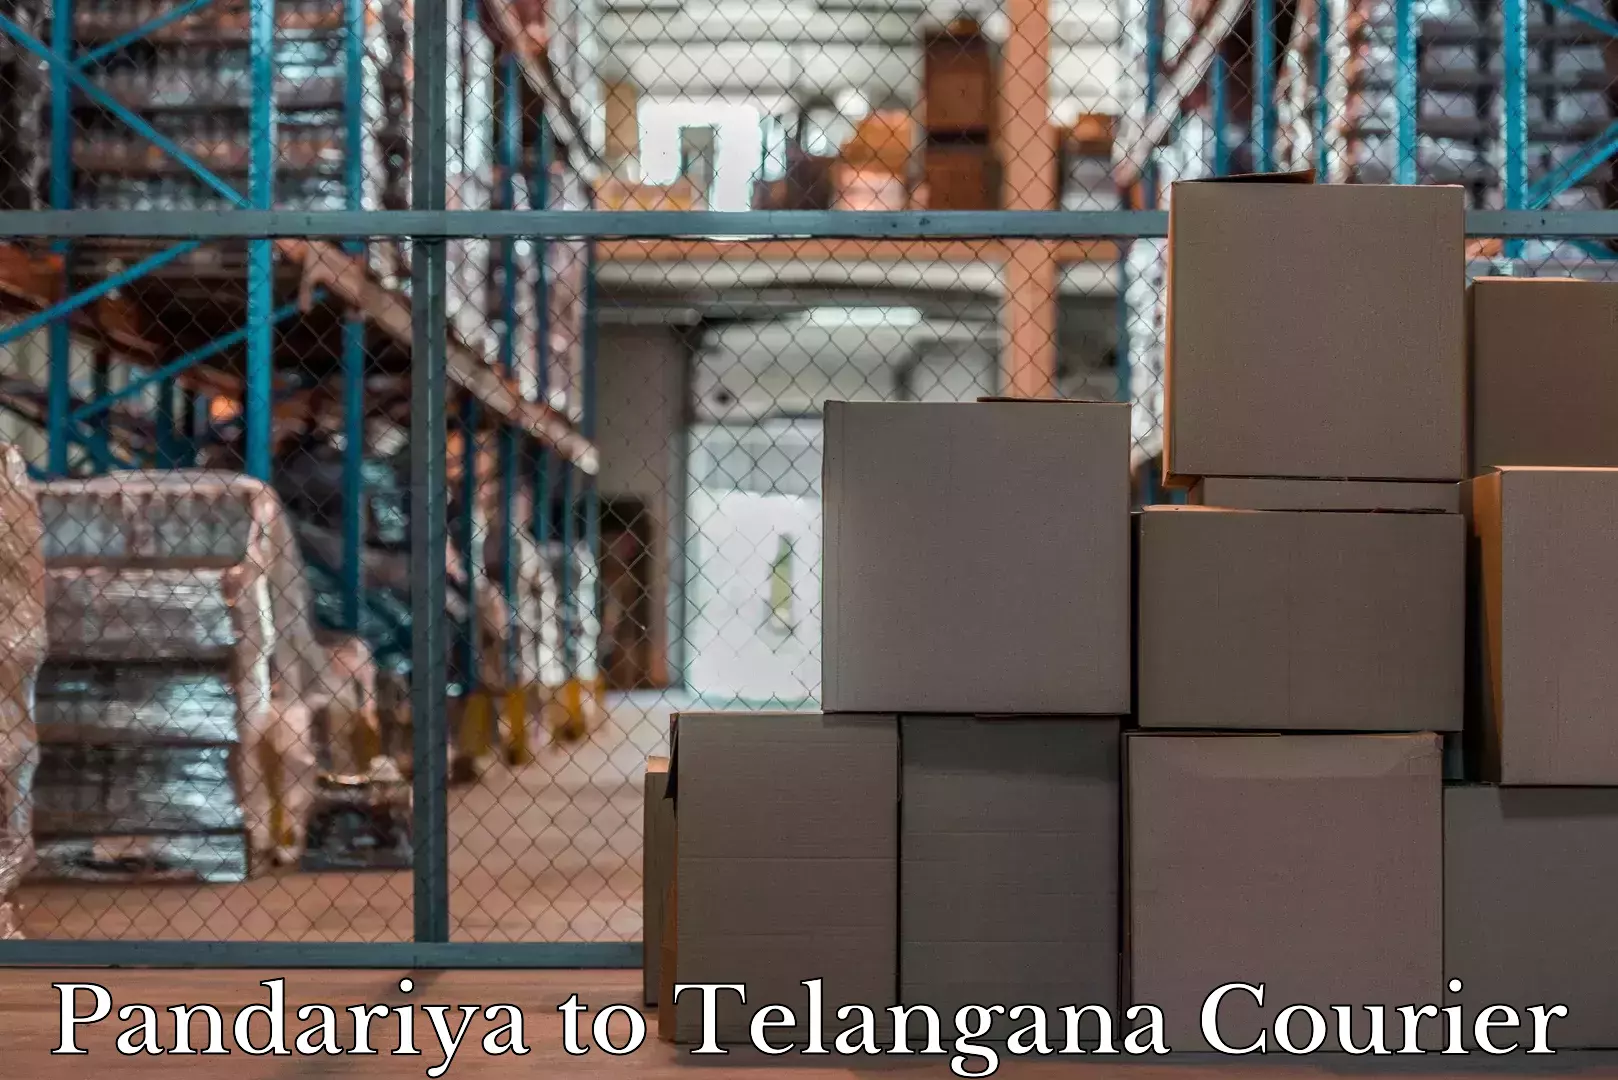 Hassle-free luggage shipping in Pandariya to Yellareddy